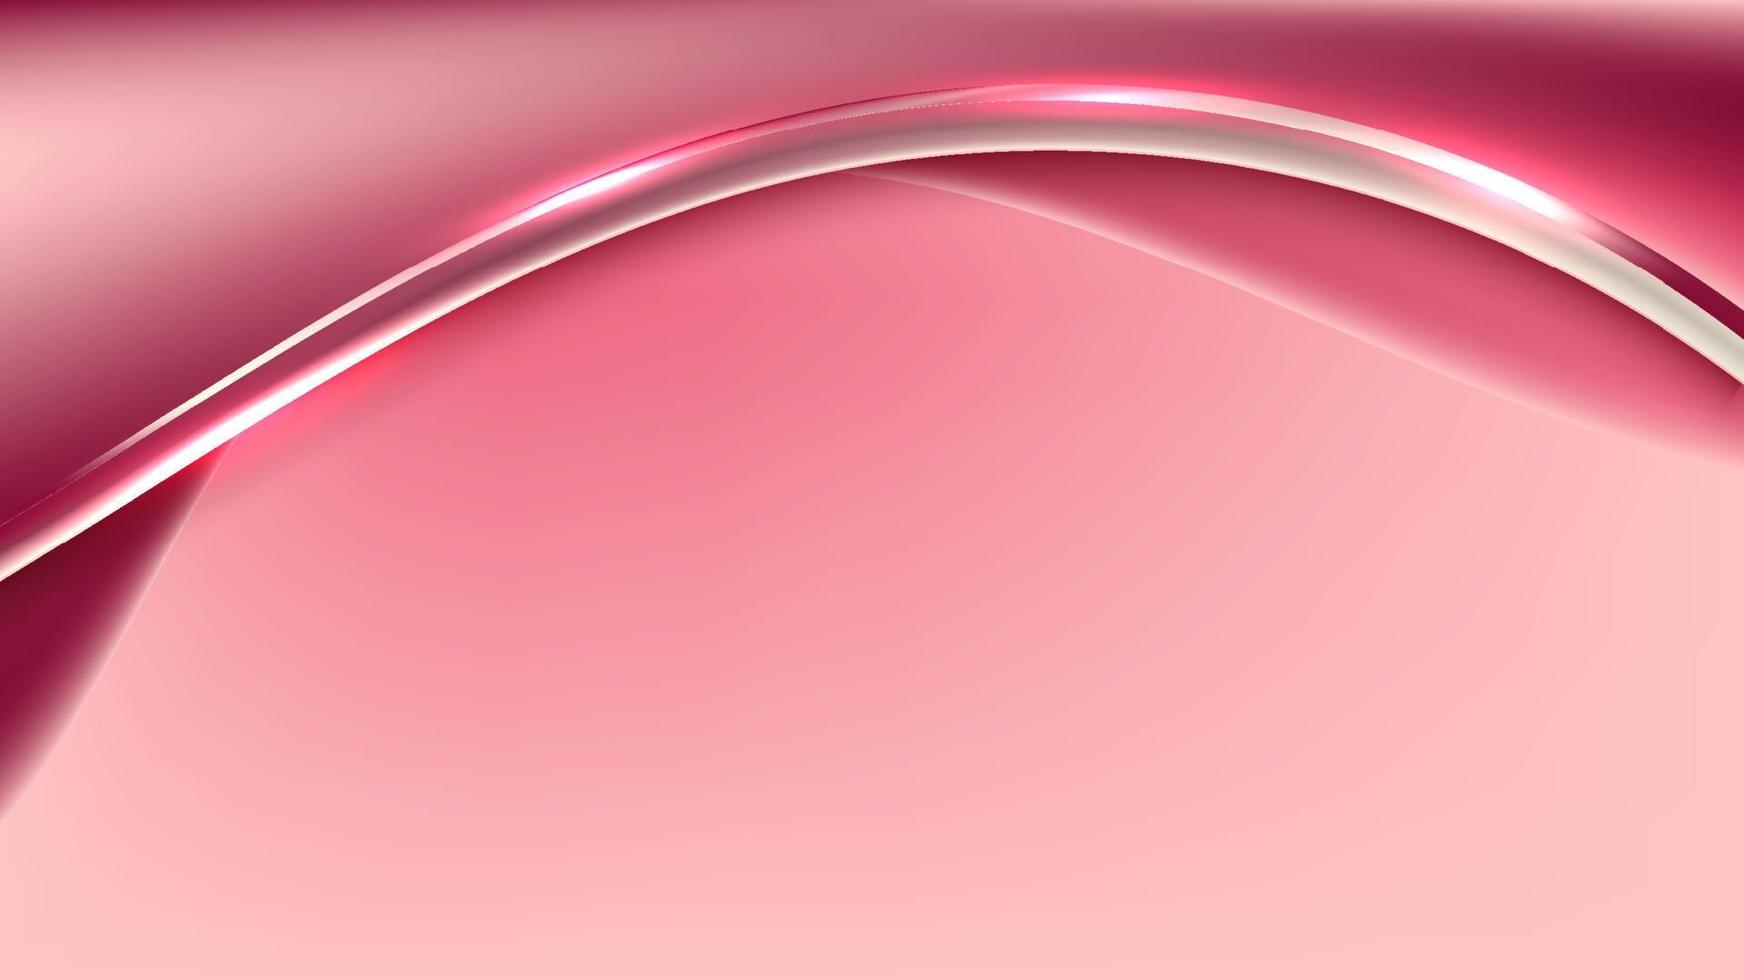 astratto 3d modello moderno rosa colore onda forma con brillante rosso curvo linea decorazione e luccichio illuminazione effetto su rosa sfondo vettore